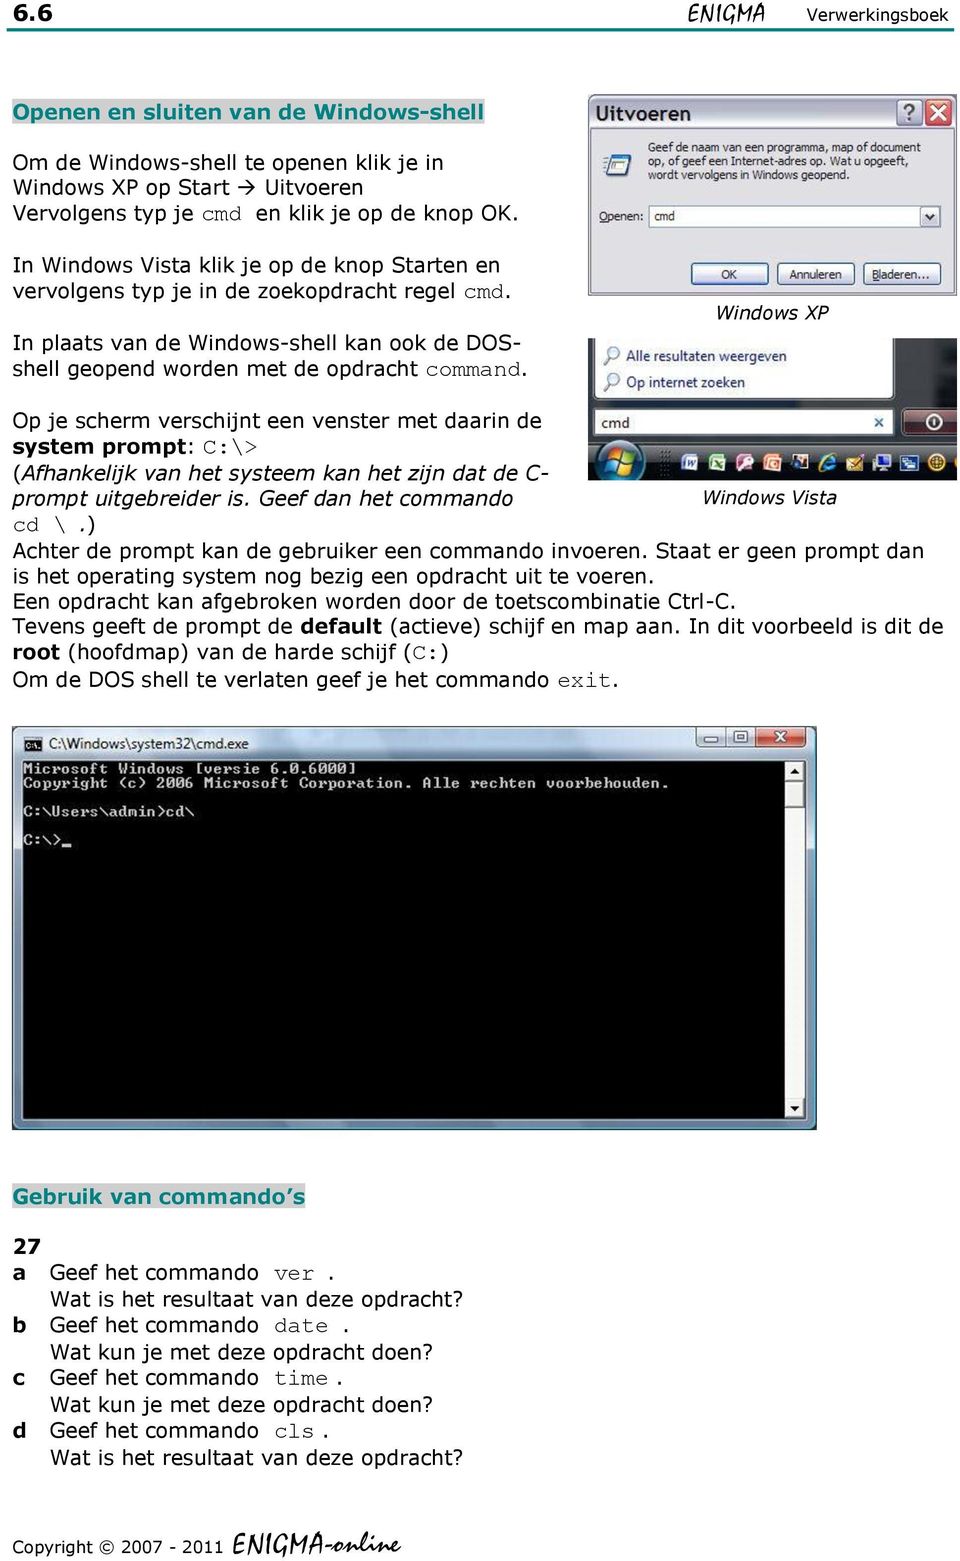 Windows XP Op je scherm verschijnt een venster met daarin de system prompt: C:\> (Afhankelijk van het systeem kan het zijn dat de C- prompt uitgebreider is. Geef dan het commando Windows Vista cd \.